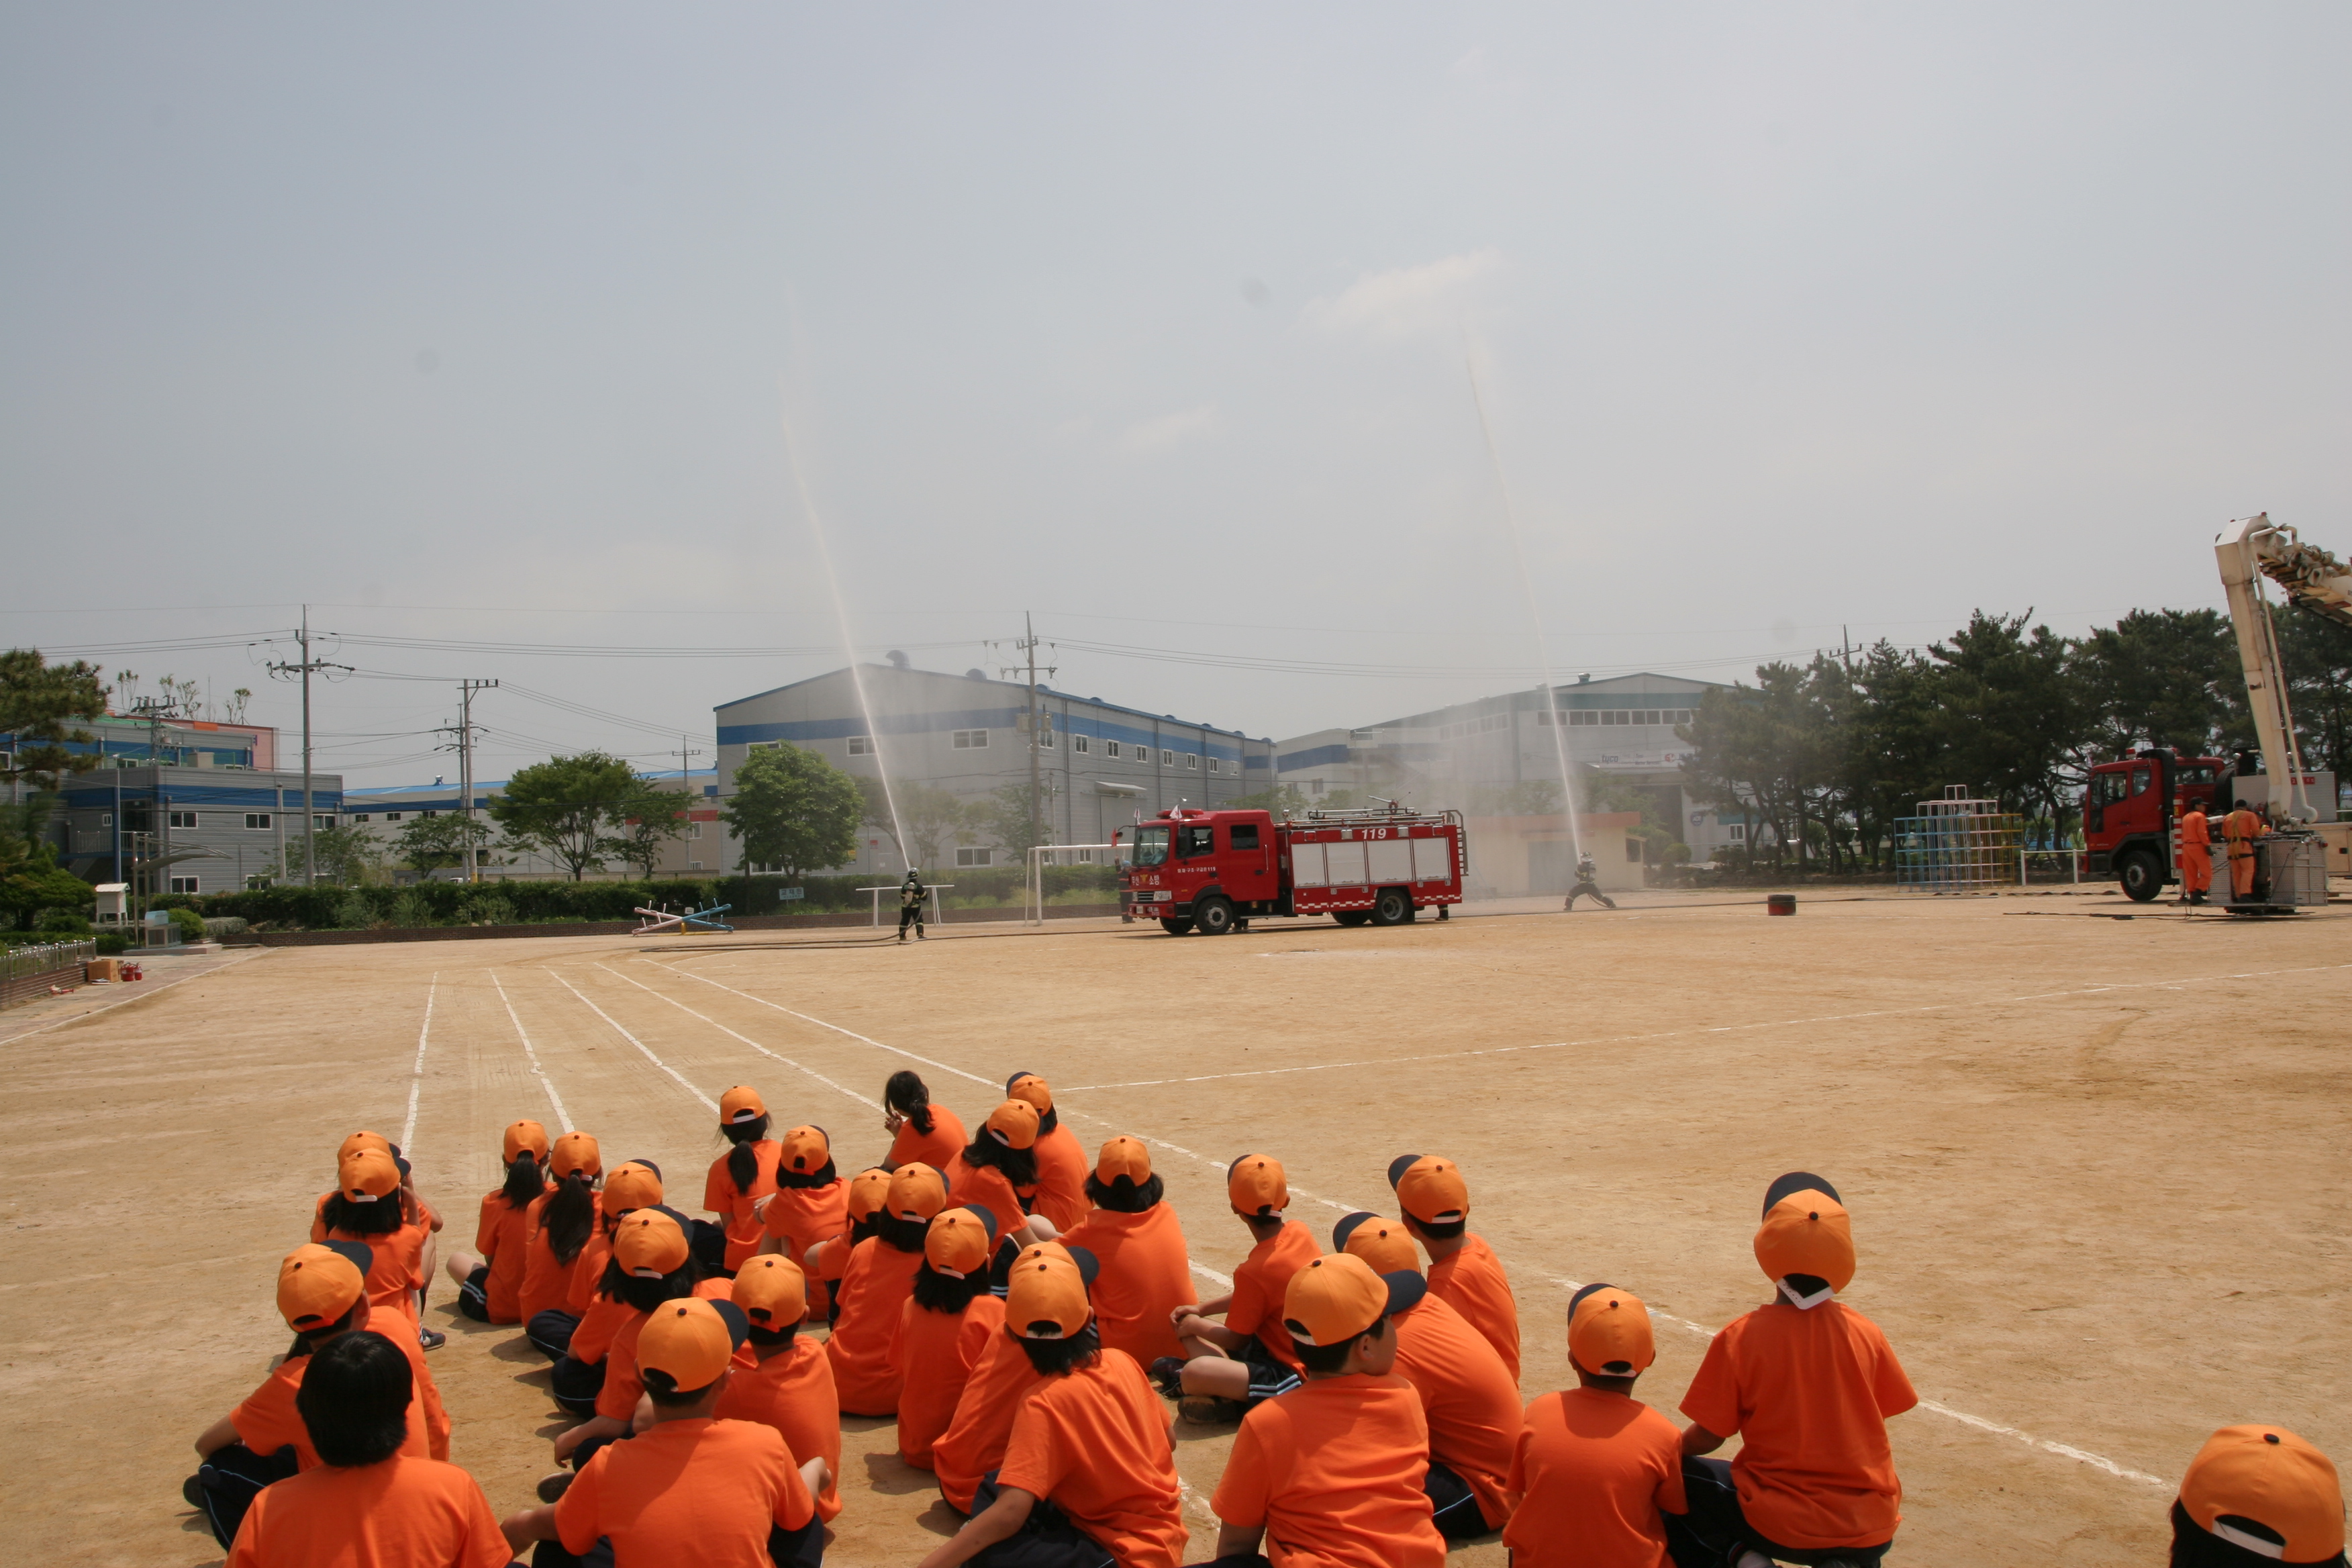 2009년 한국 119소년단 발대식 및 소방안전체험 교실 운영 사진2